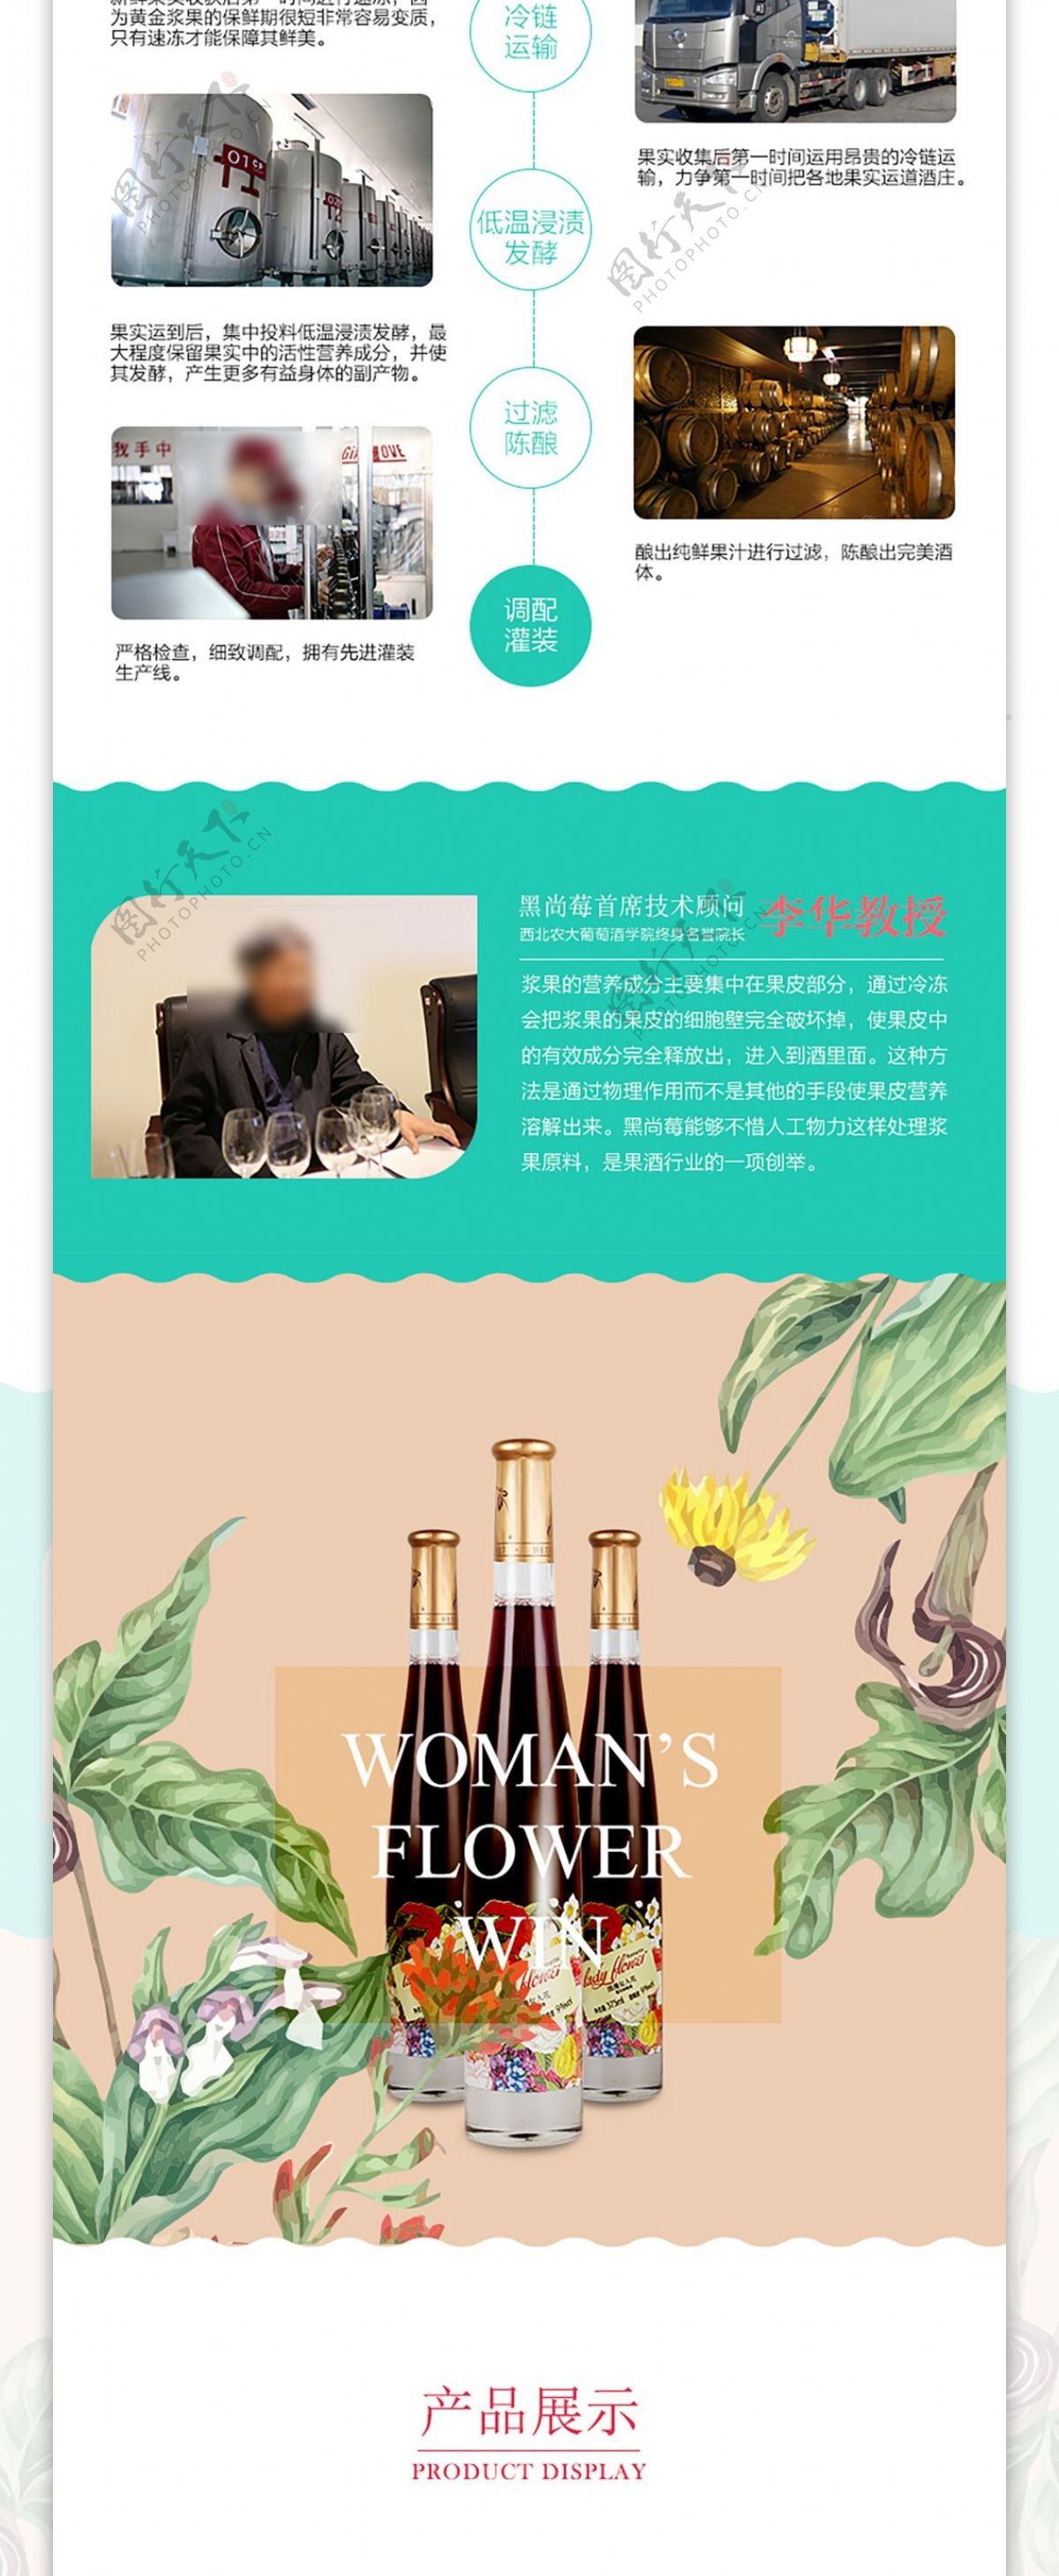 天猫淘宝女士酒京东详情排版设计酒水大促详情页模板